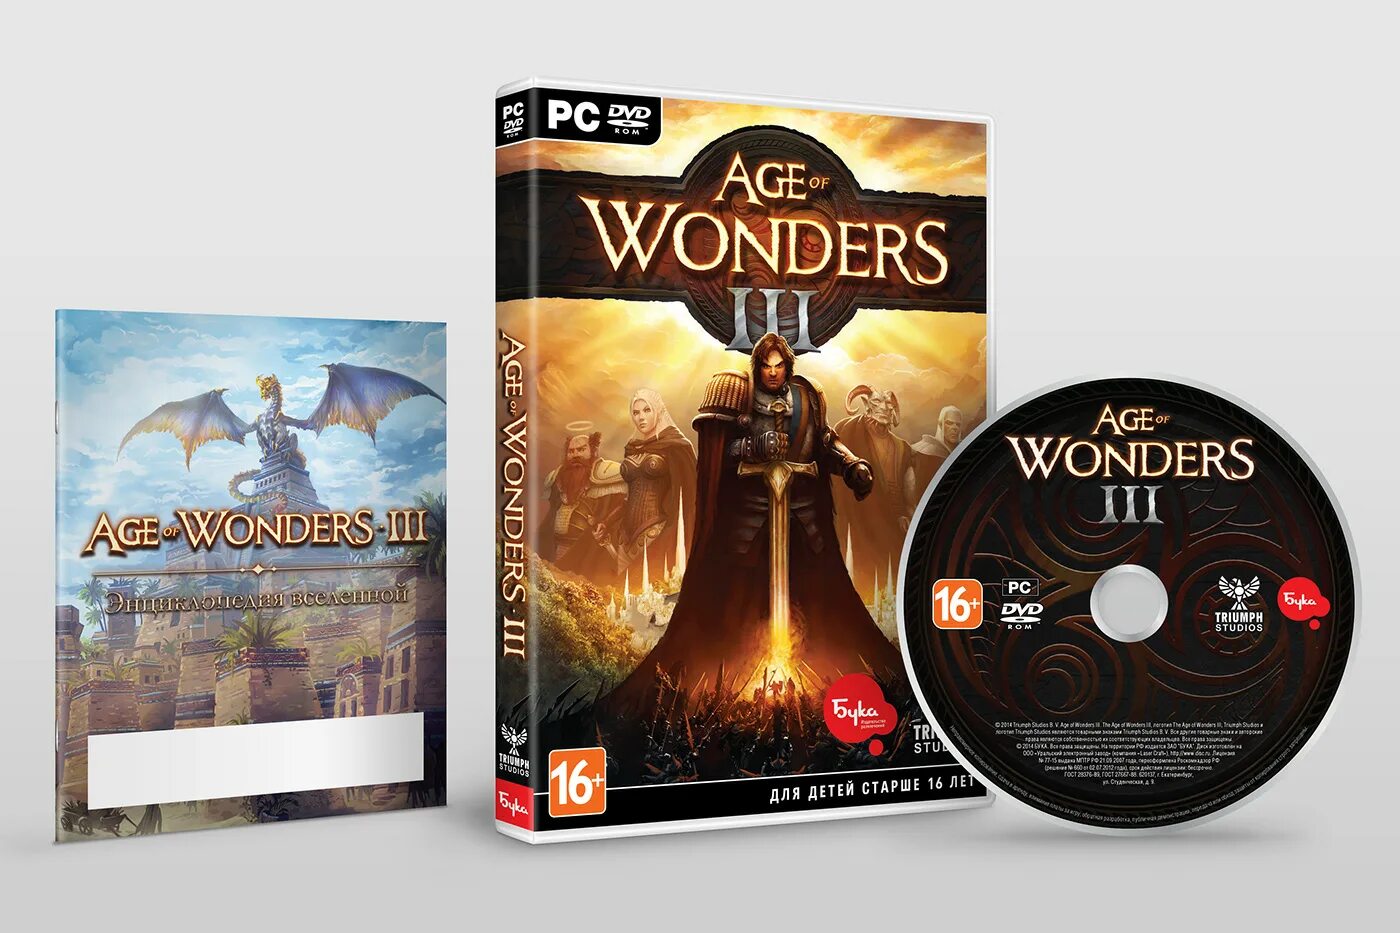 Buka ru. Age of Wonders III. Age of Wonders 3 диск. Age of Wonders 1 диск. Эйдж оф вондерс 3.